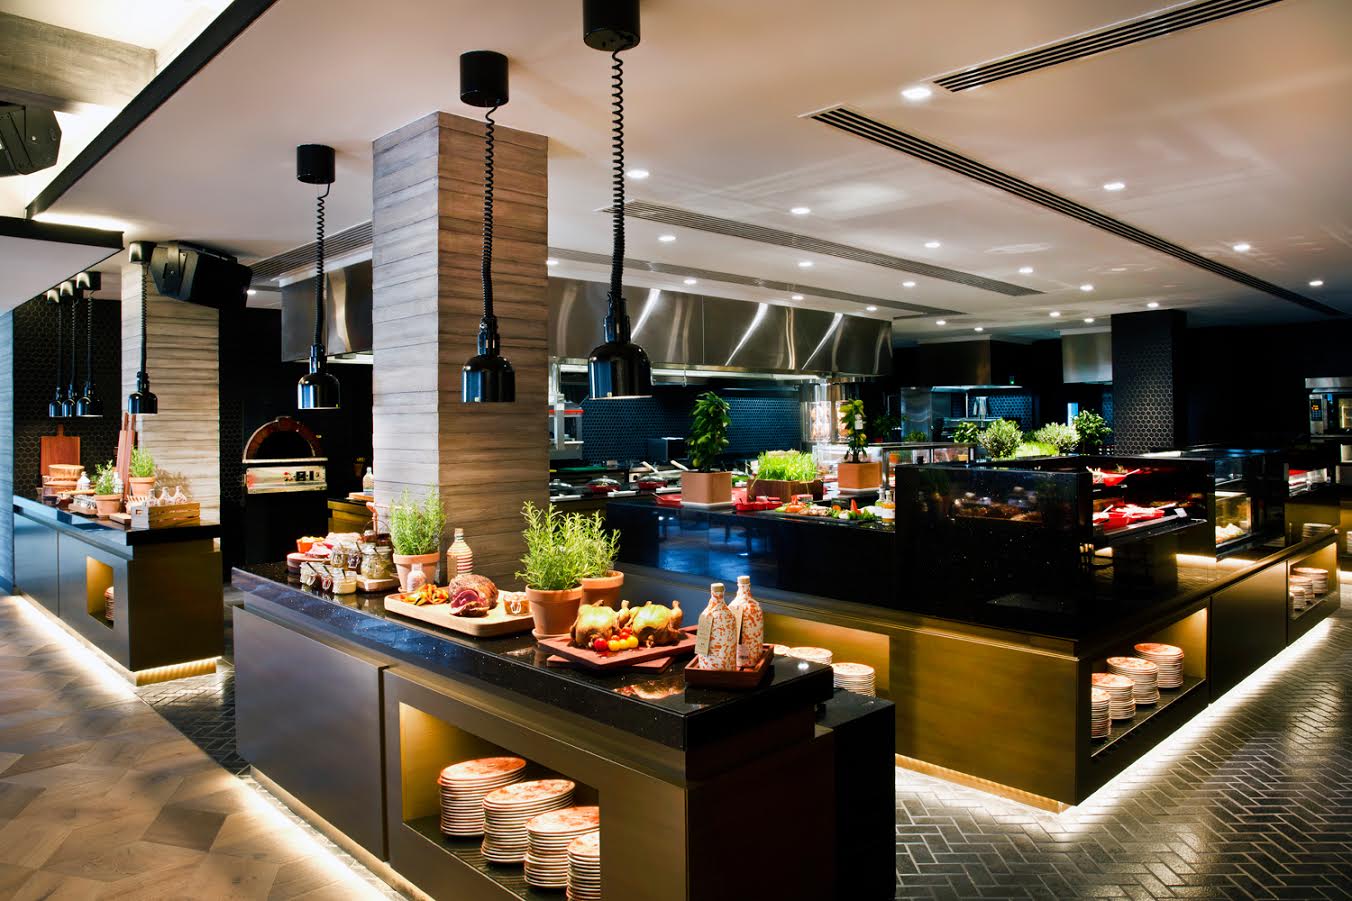 مطعم يالومبا دبي يقدم فرصة للفوز برحلة إلى أستراليا